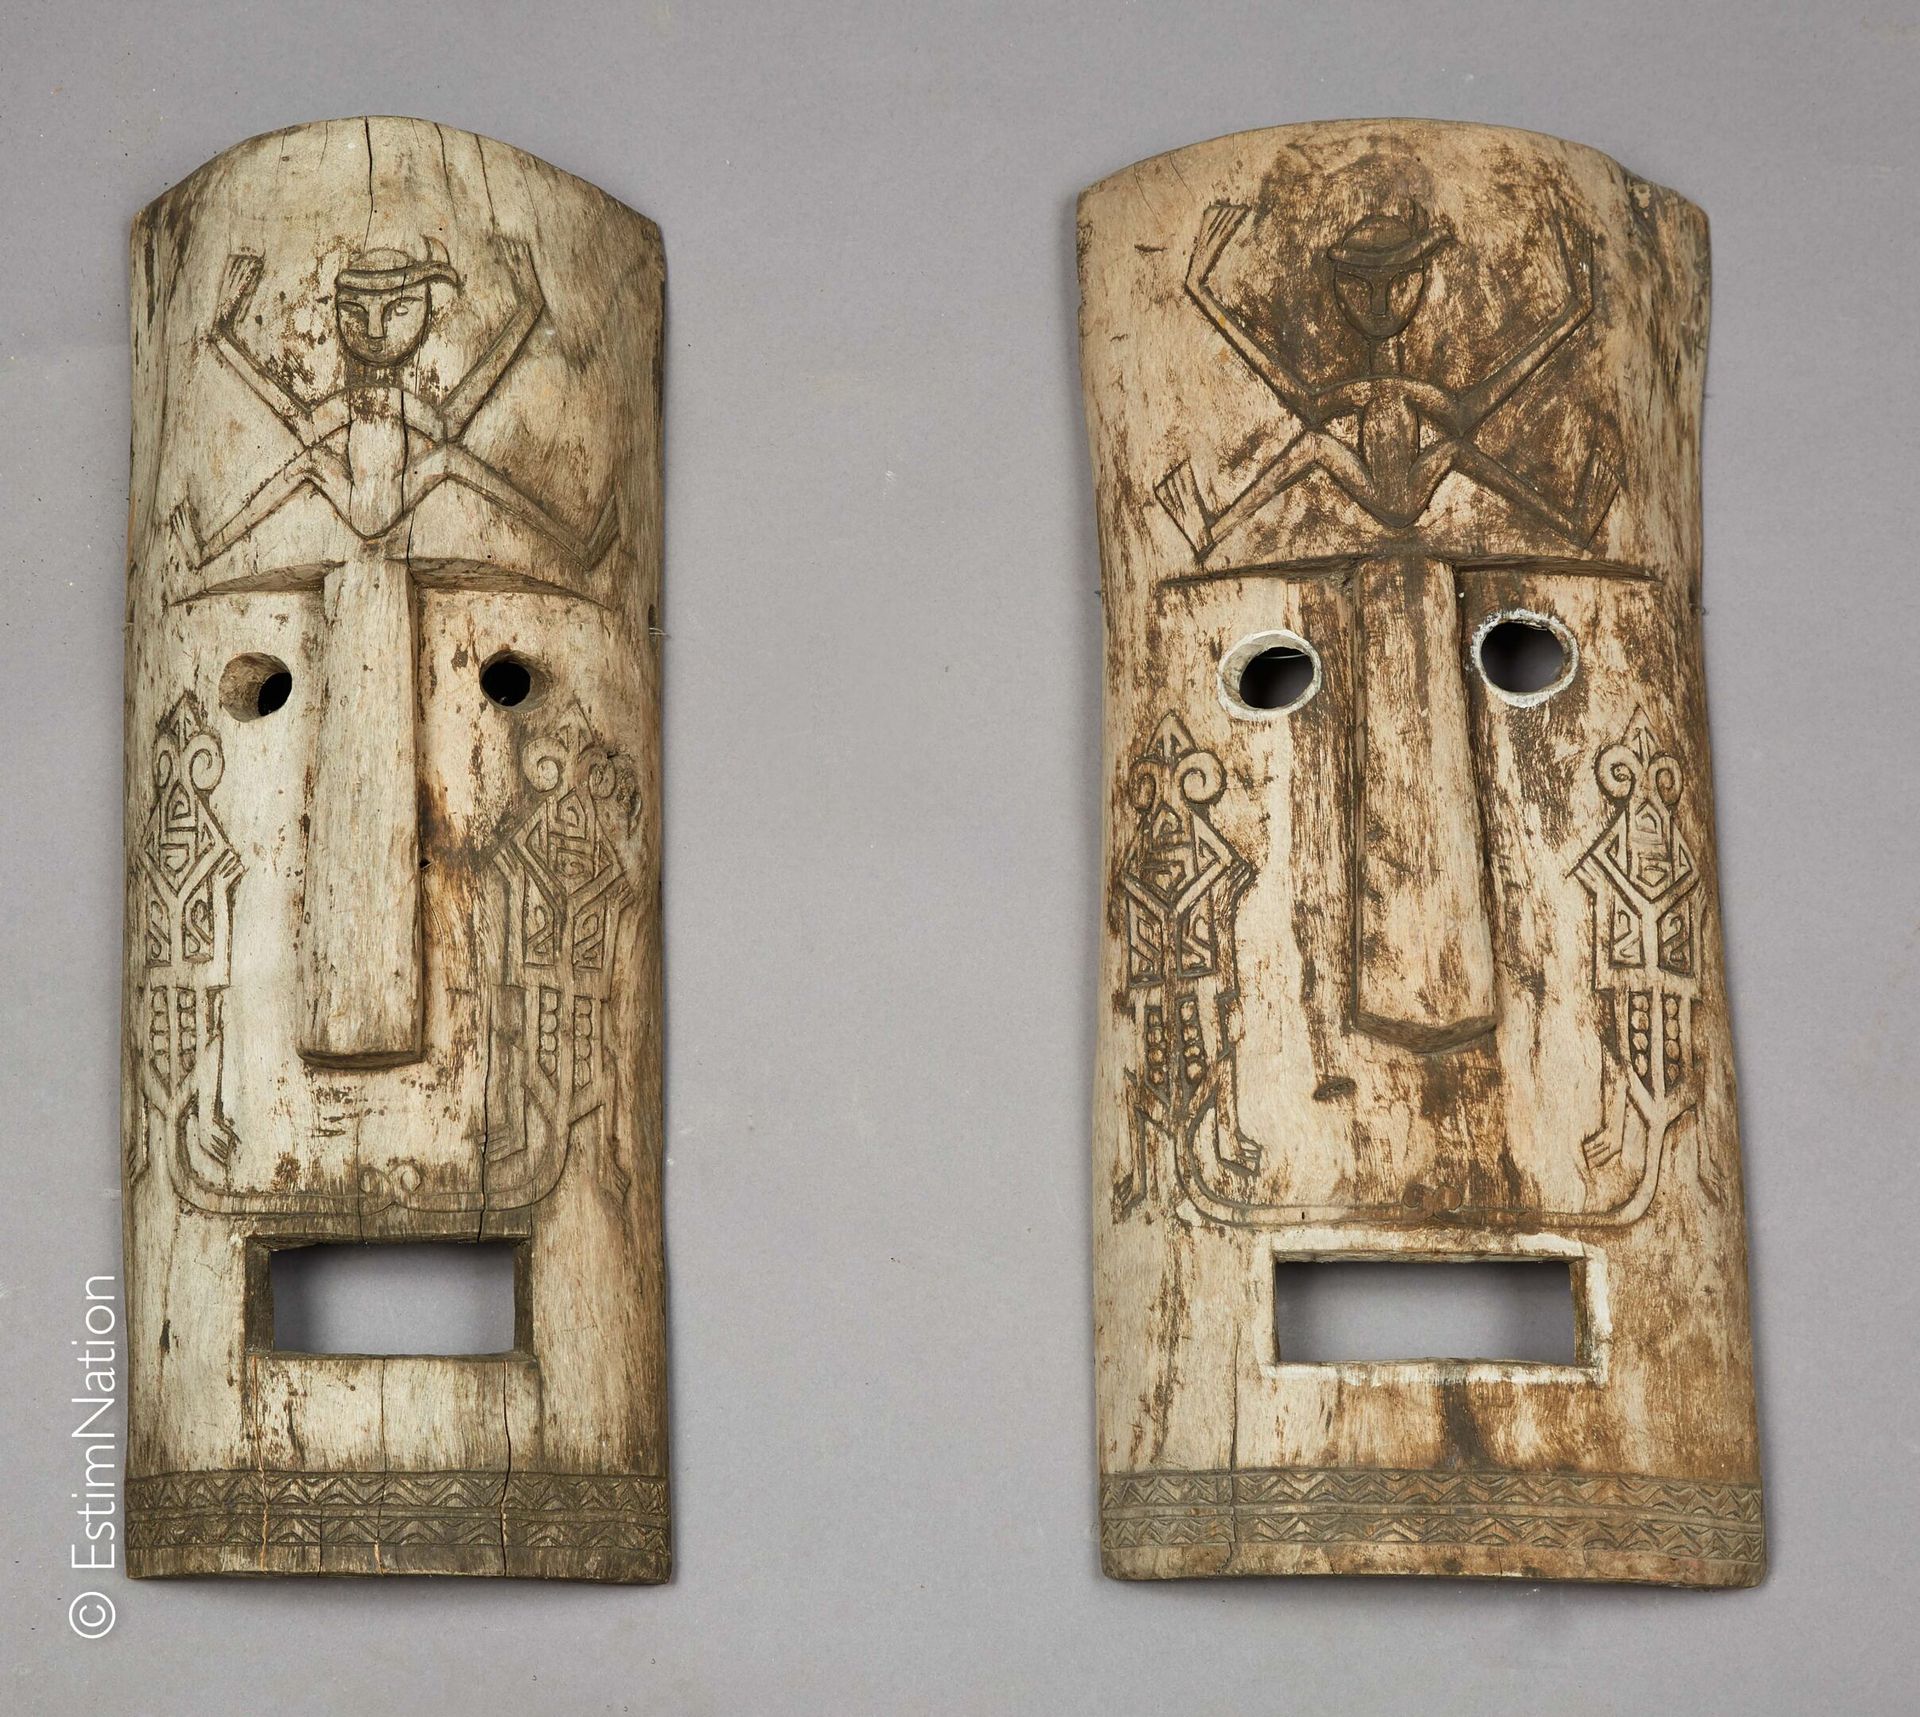 SUMATRA SUMATRA



一对木制的雕刻和铜化的面具，模拟龇牙咧嘴的脸，额头上装饰着举起手臂的坐着的人物，脸颊上是带有几何图案的蜥蜴造型。



高&hellip;